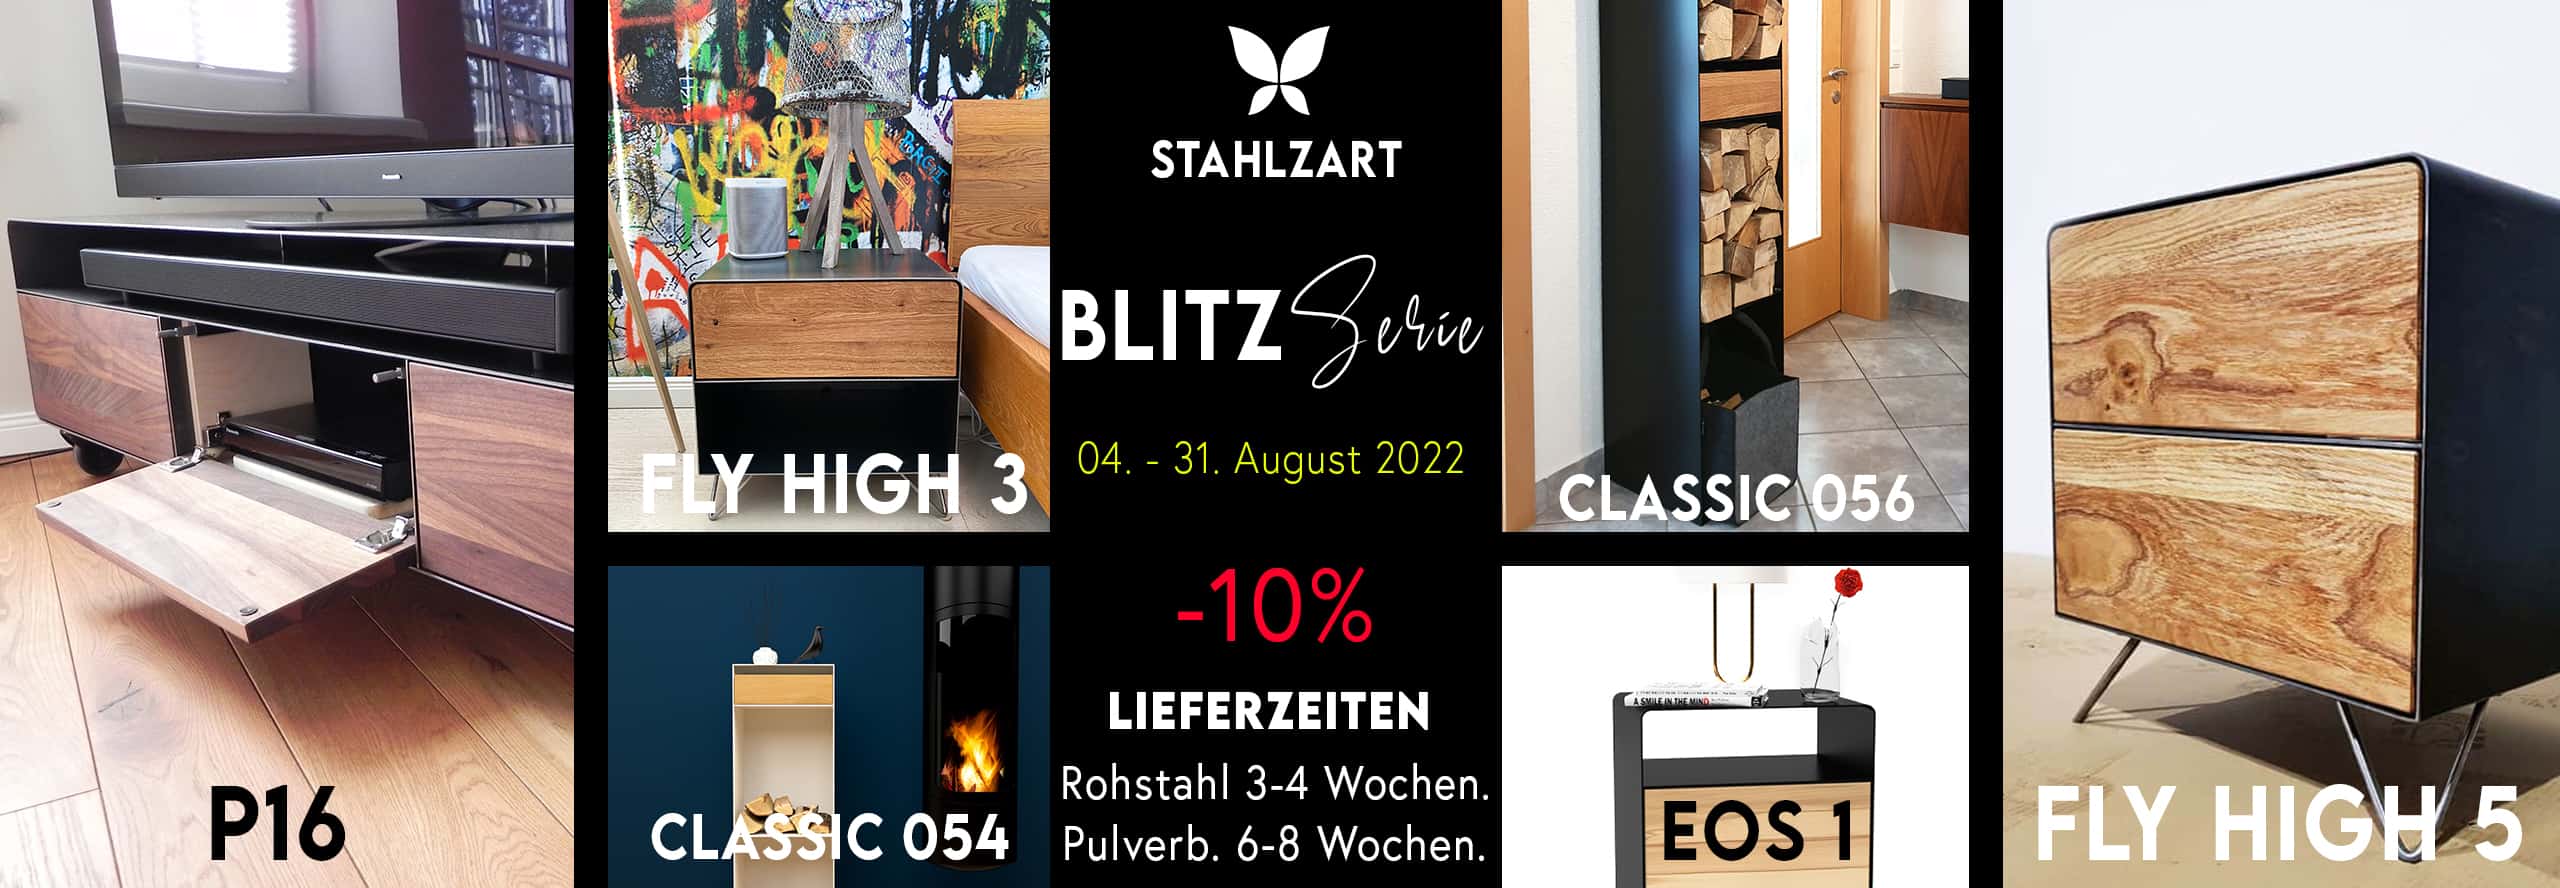 stahlzart-moebel-blitz-serie-august-2022-lowboard-nachttisch-kaminholzregal-weiss-schwarz-grau-holz-eiche-metall-modern-design-massivholz-wildeiche-nussbaum-buche-wohnzimmer-10%-rabatt-sale